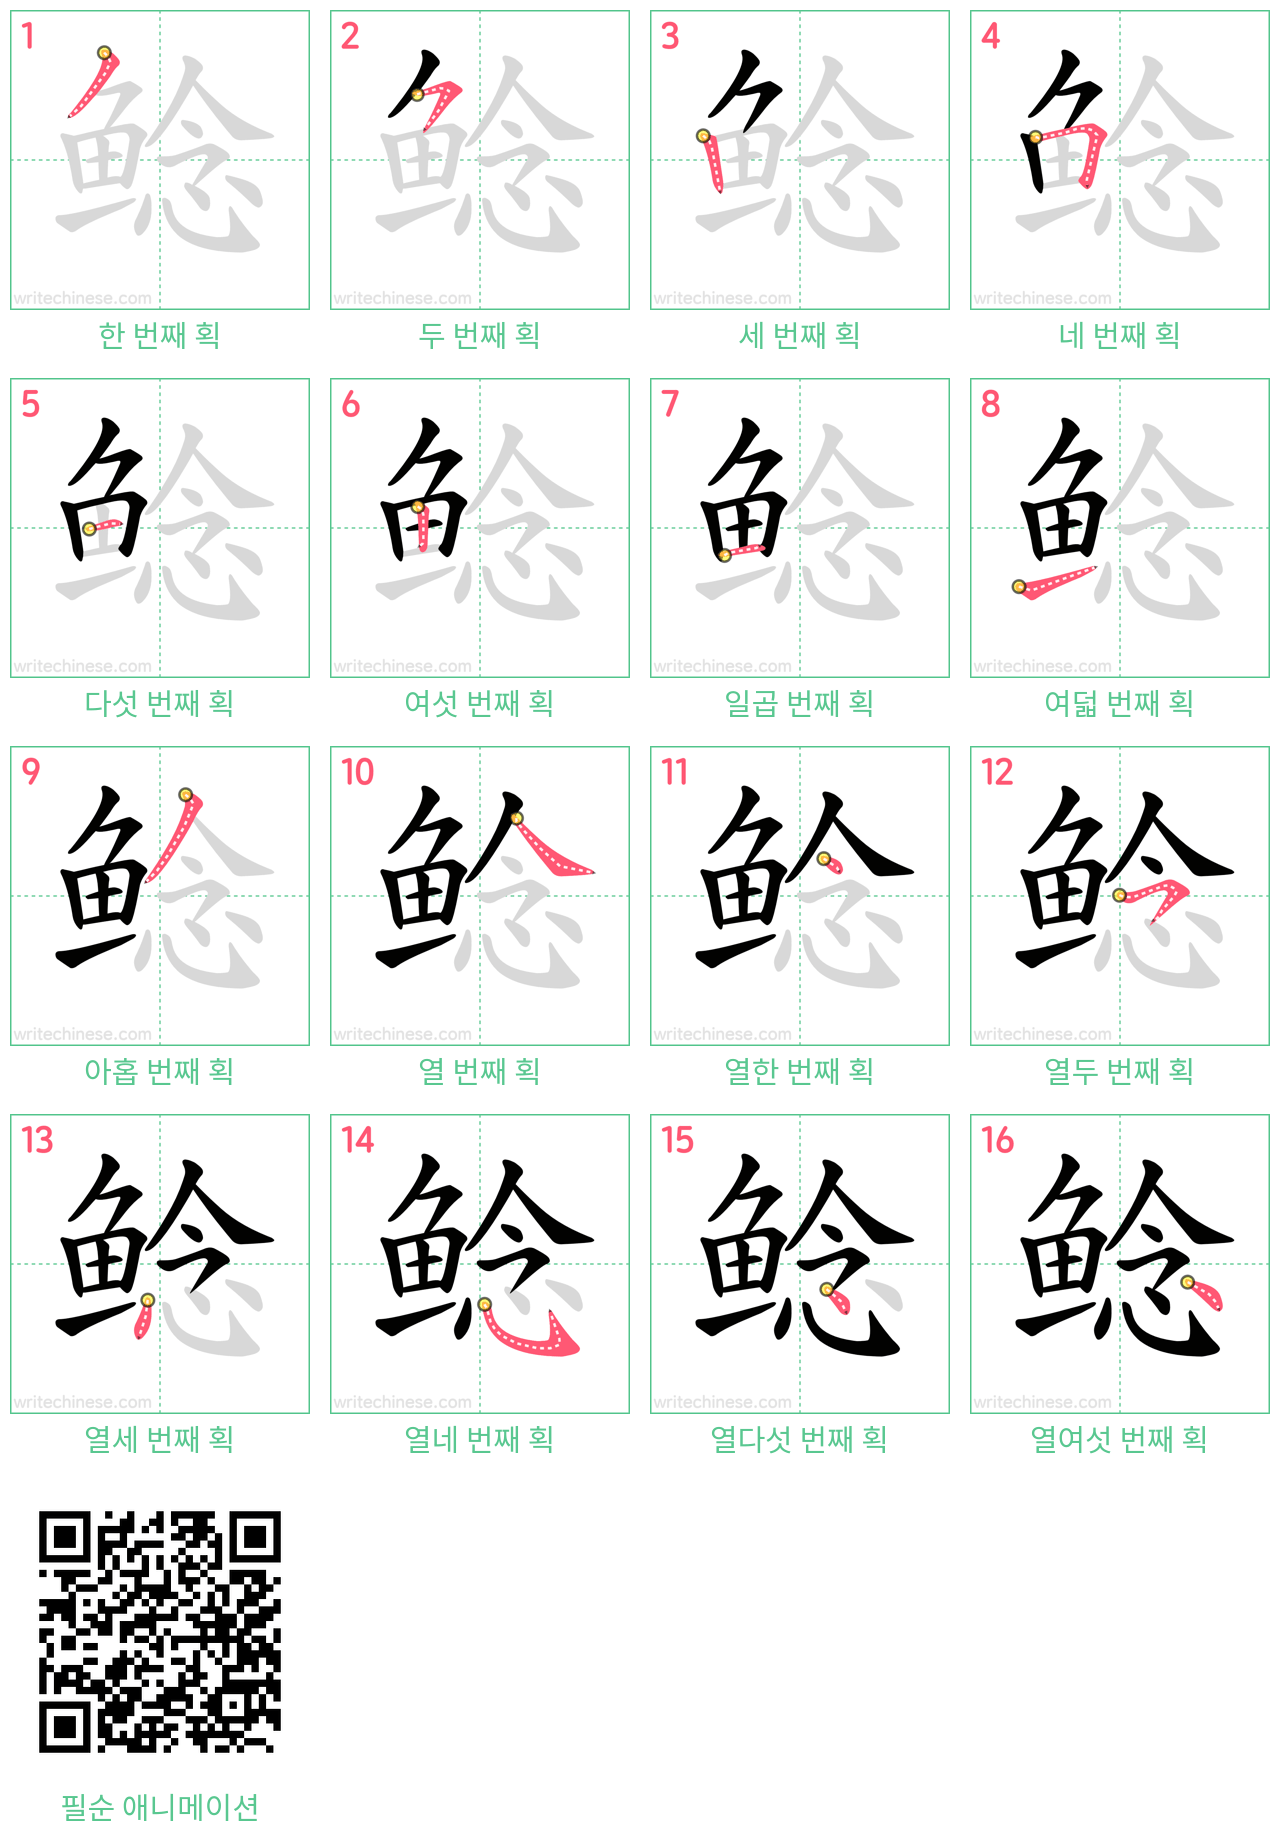 鲶 step-by-step stroke order diagrams